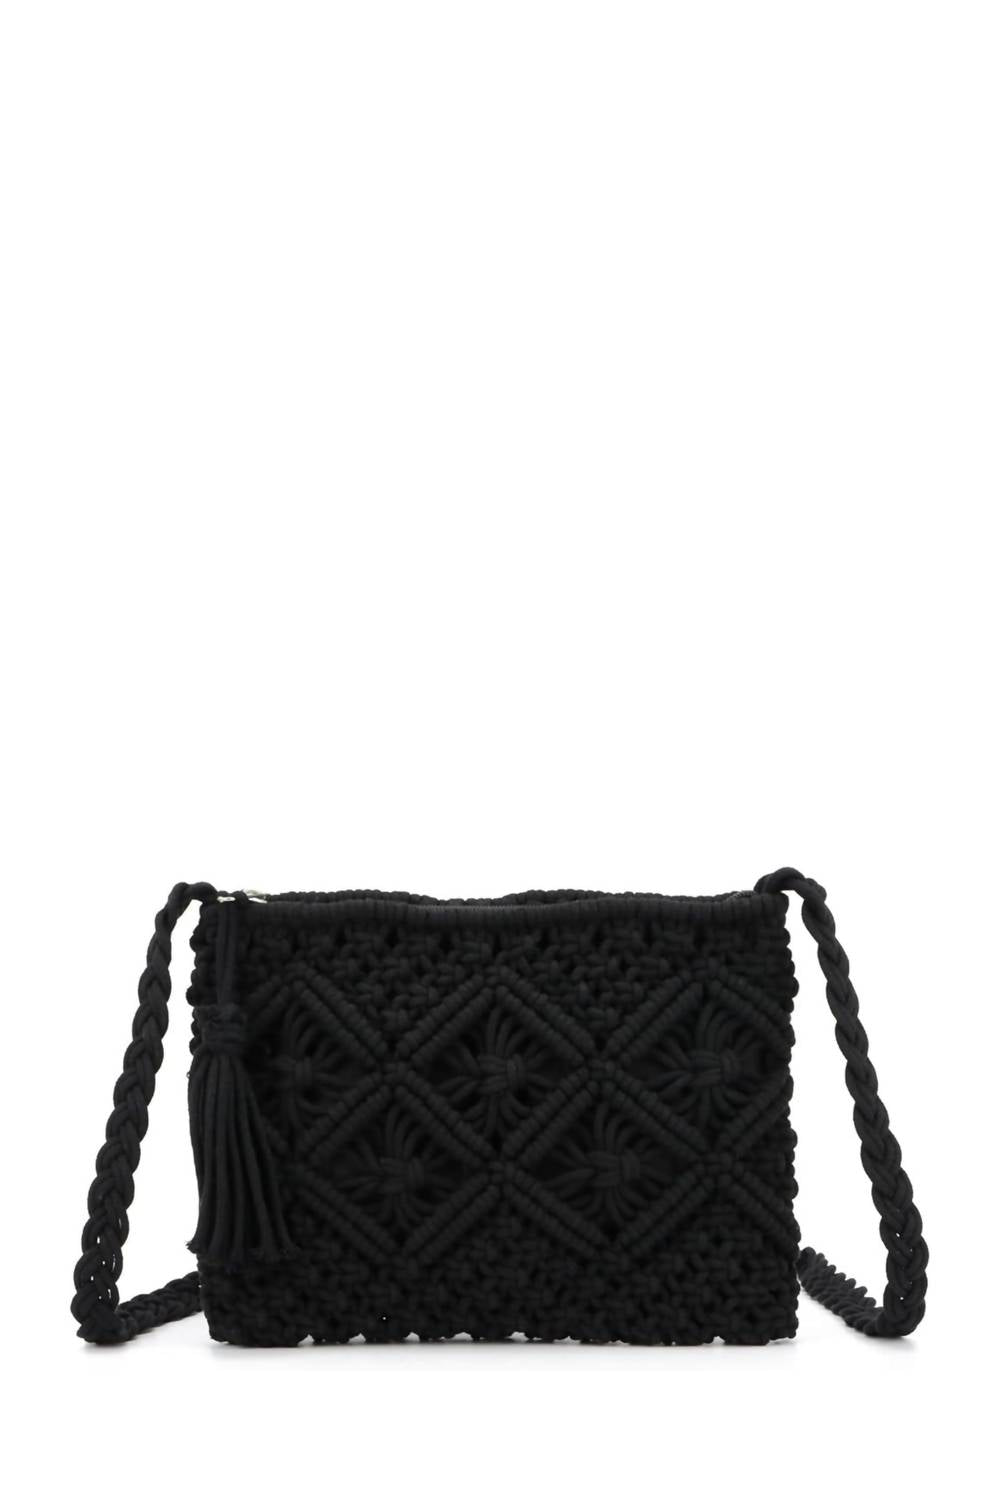 Jen & Co. Crochet Crossbody Bag In Black